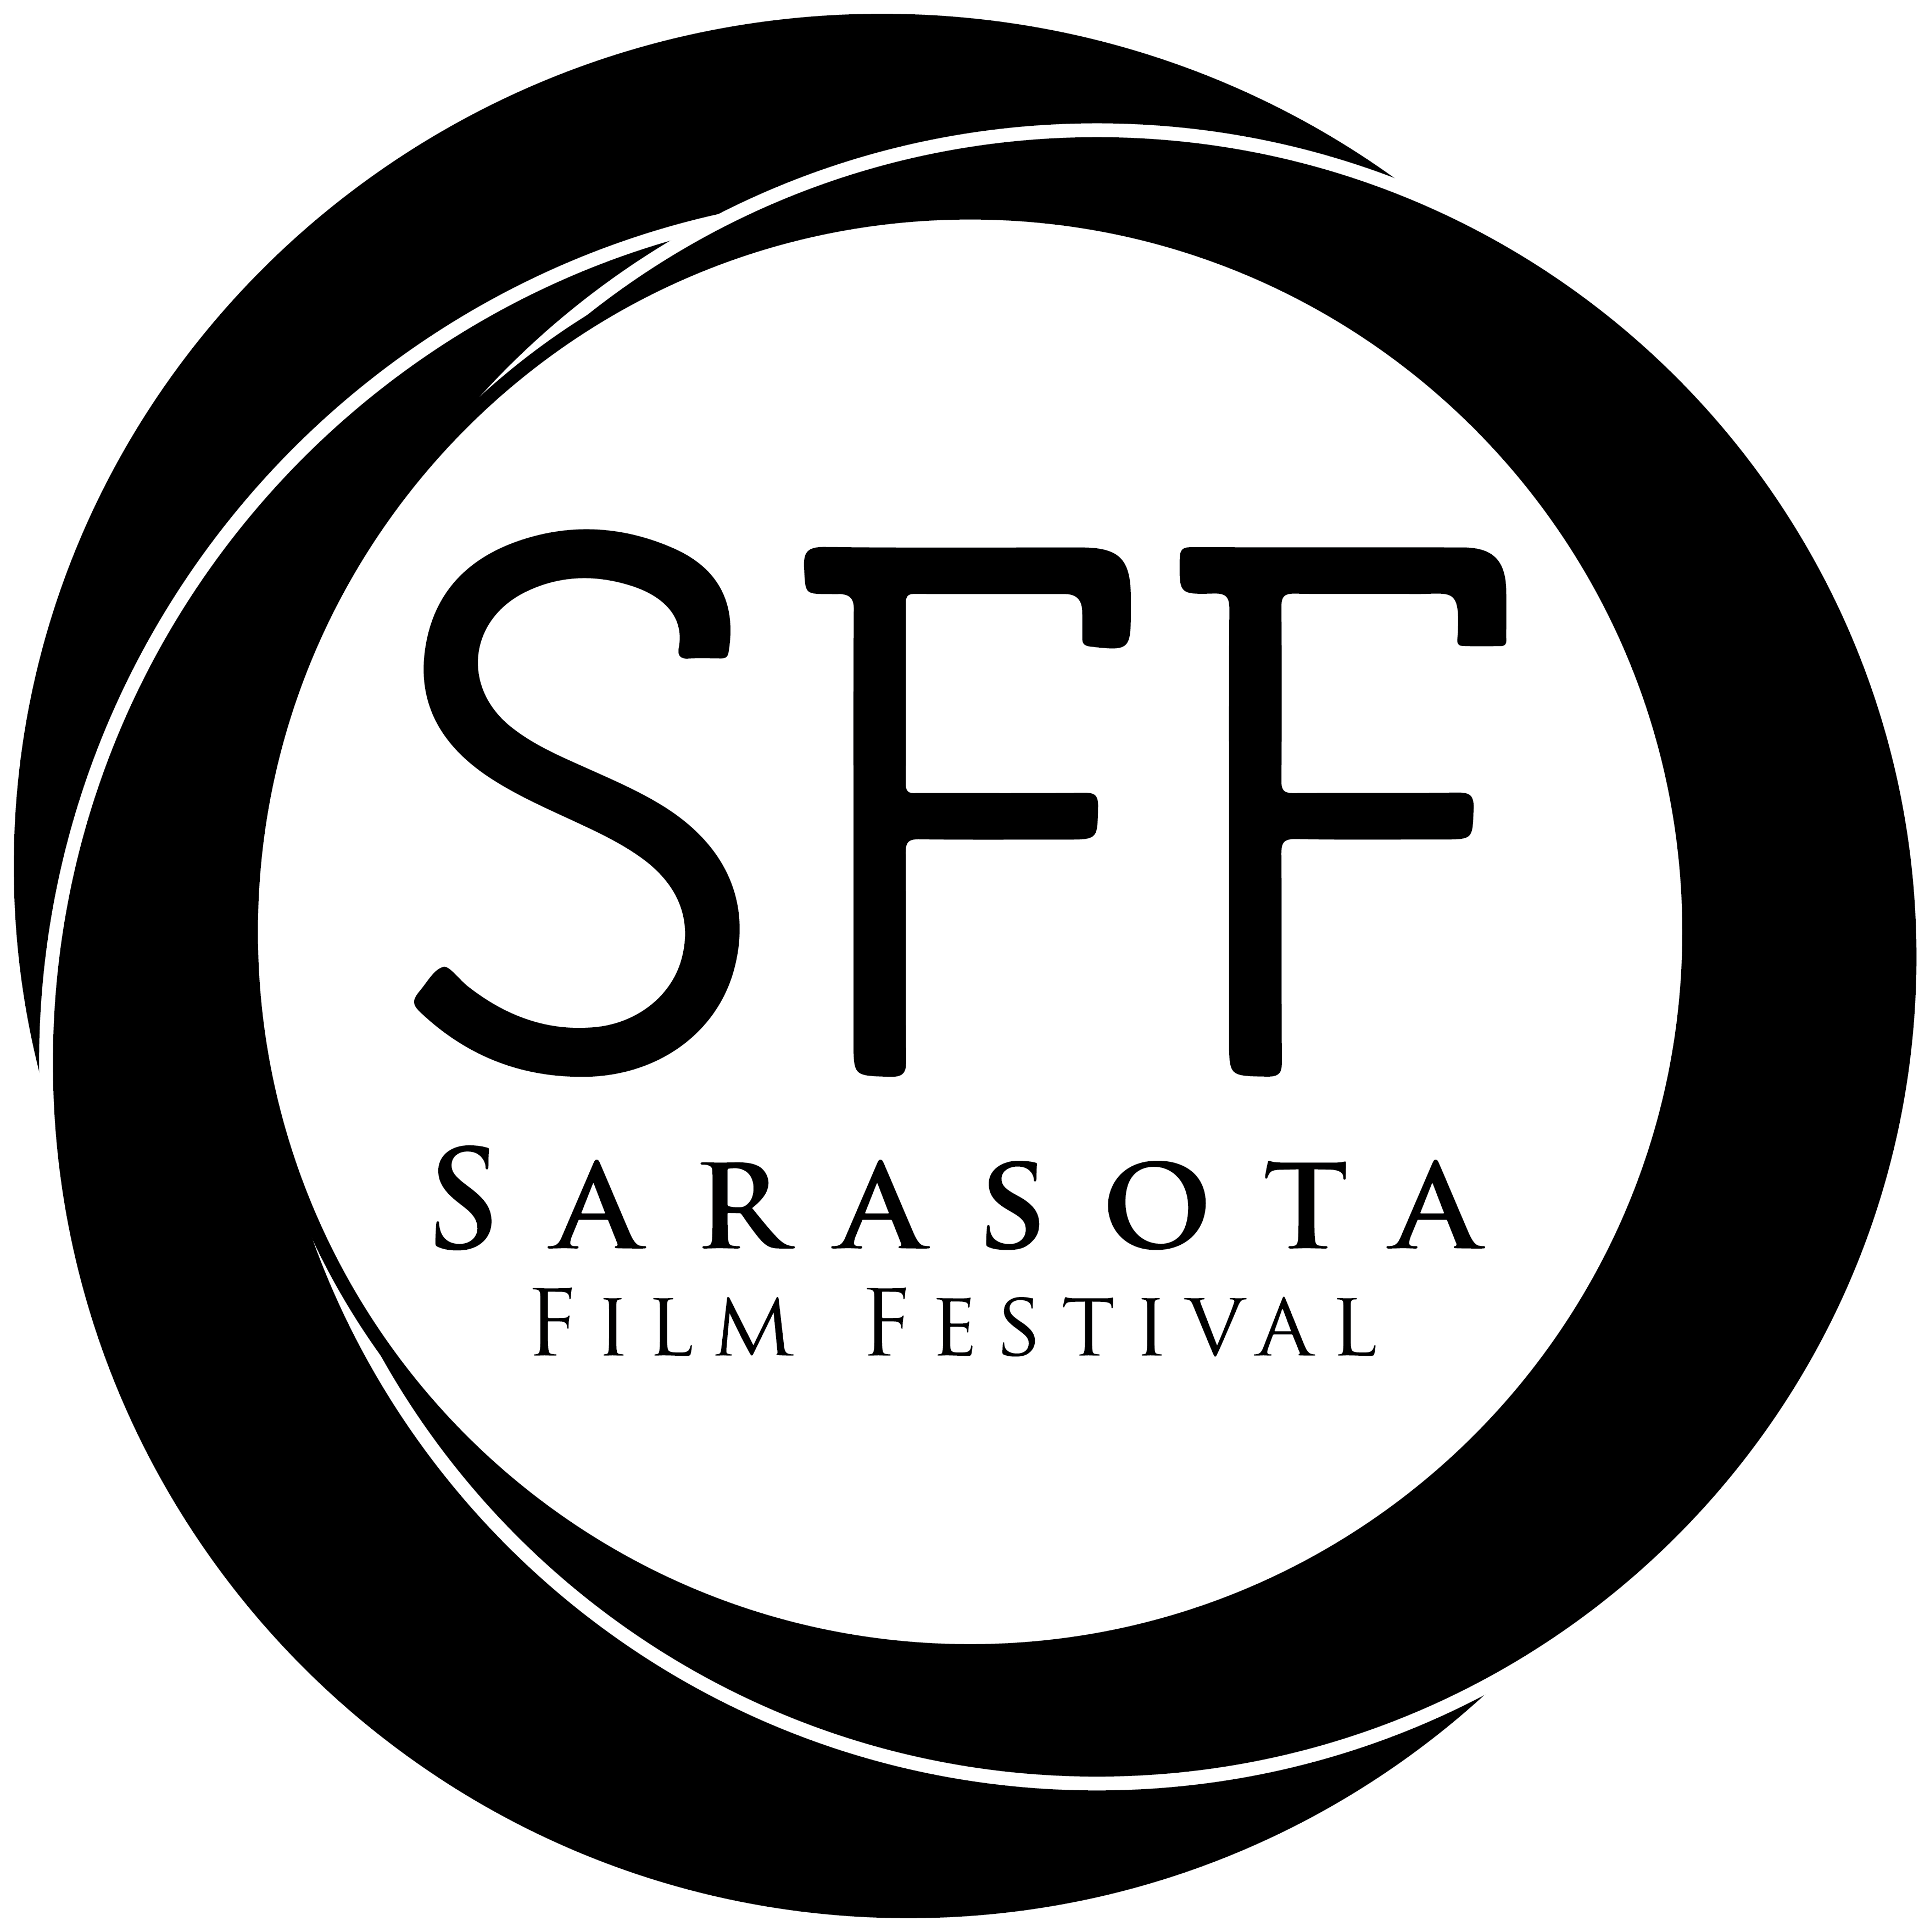 Sarasota